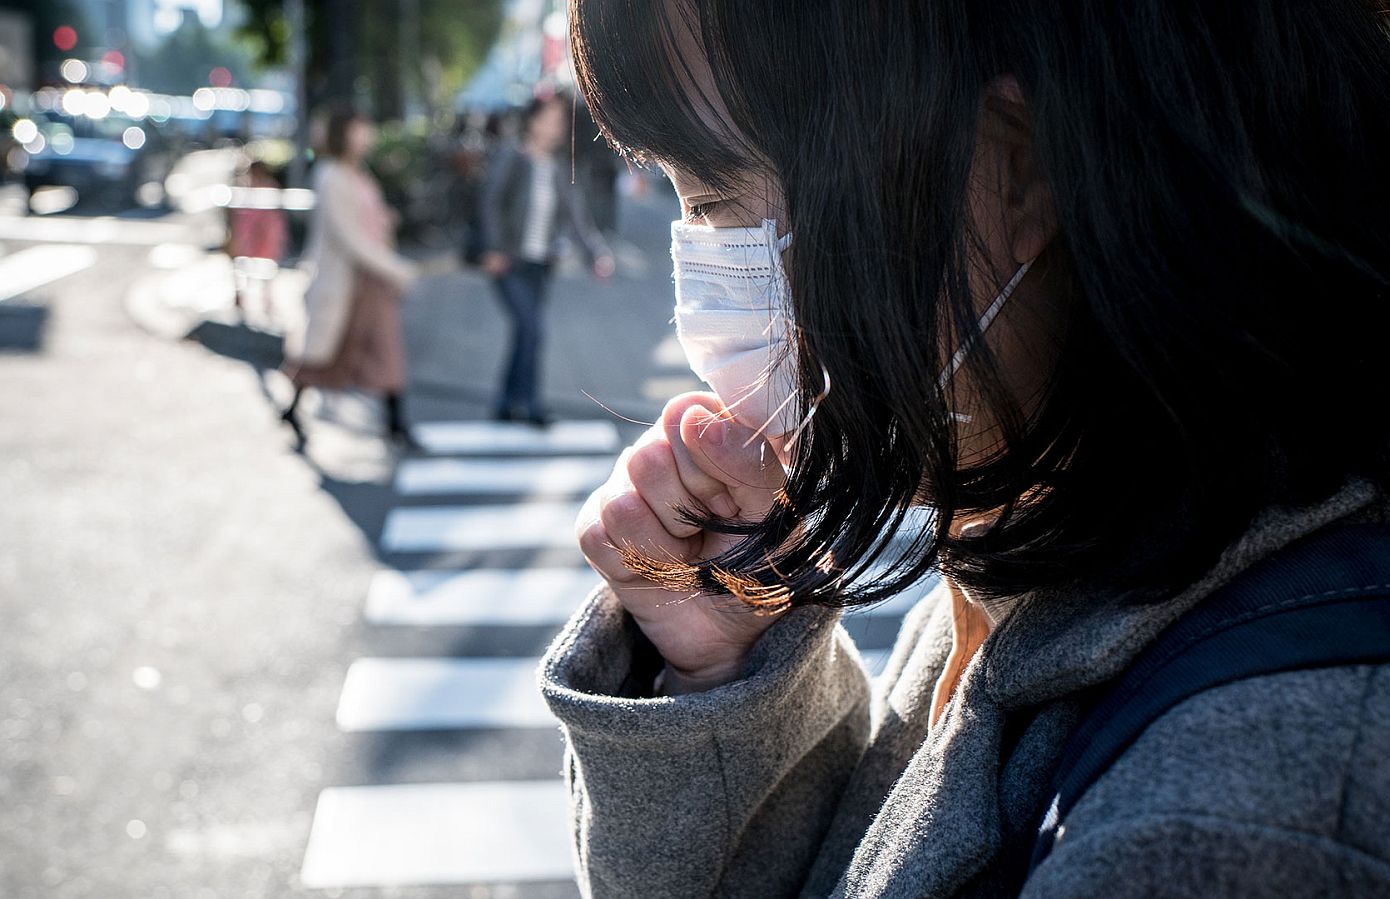 Συναγερμός στην Ιαπωνία: Βακτήριο που τρώει τη σάρκα εξαπλώνεται με ταχείς ρυθμούς &#8211; Μπορεί να σκοτώσει άνθρωπο μέσα σε 48 ώρες